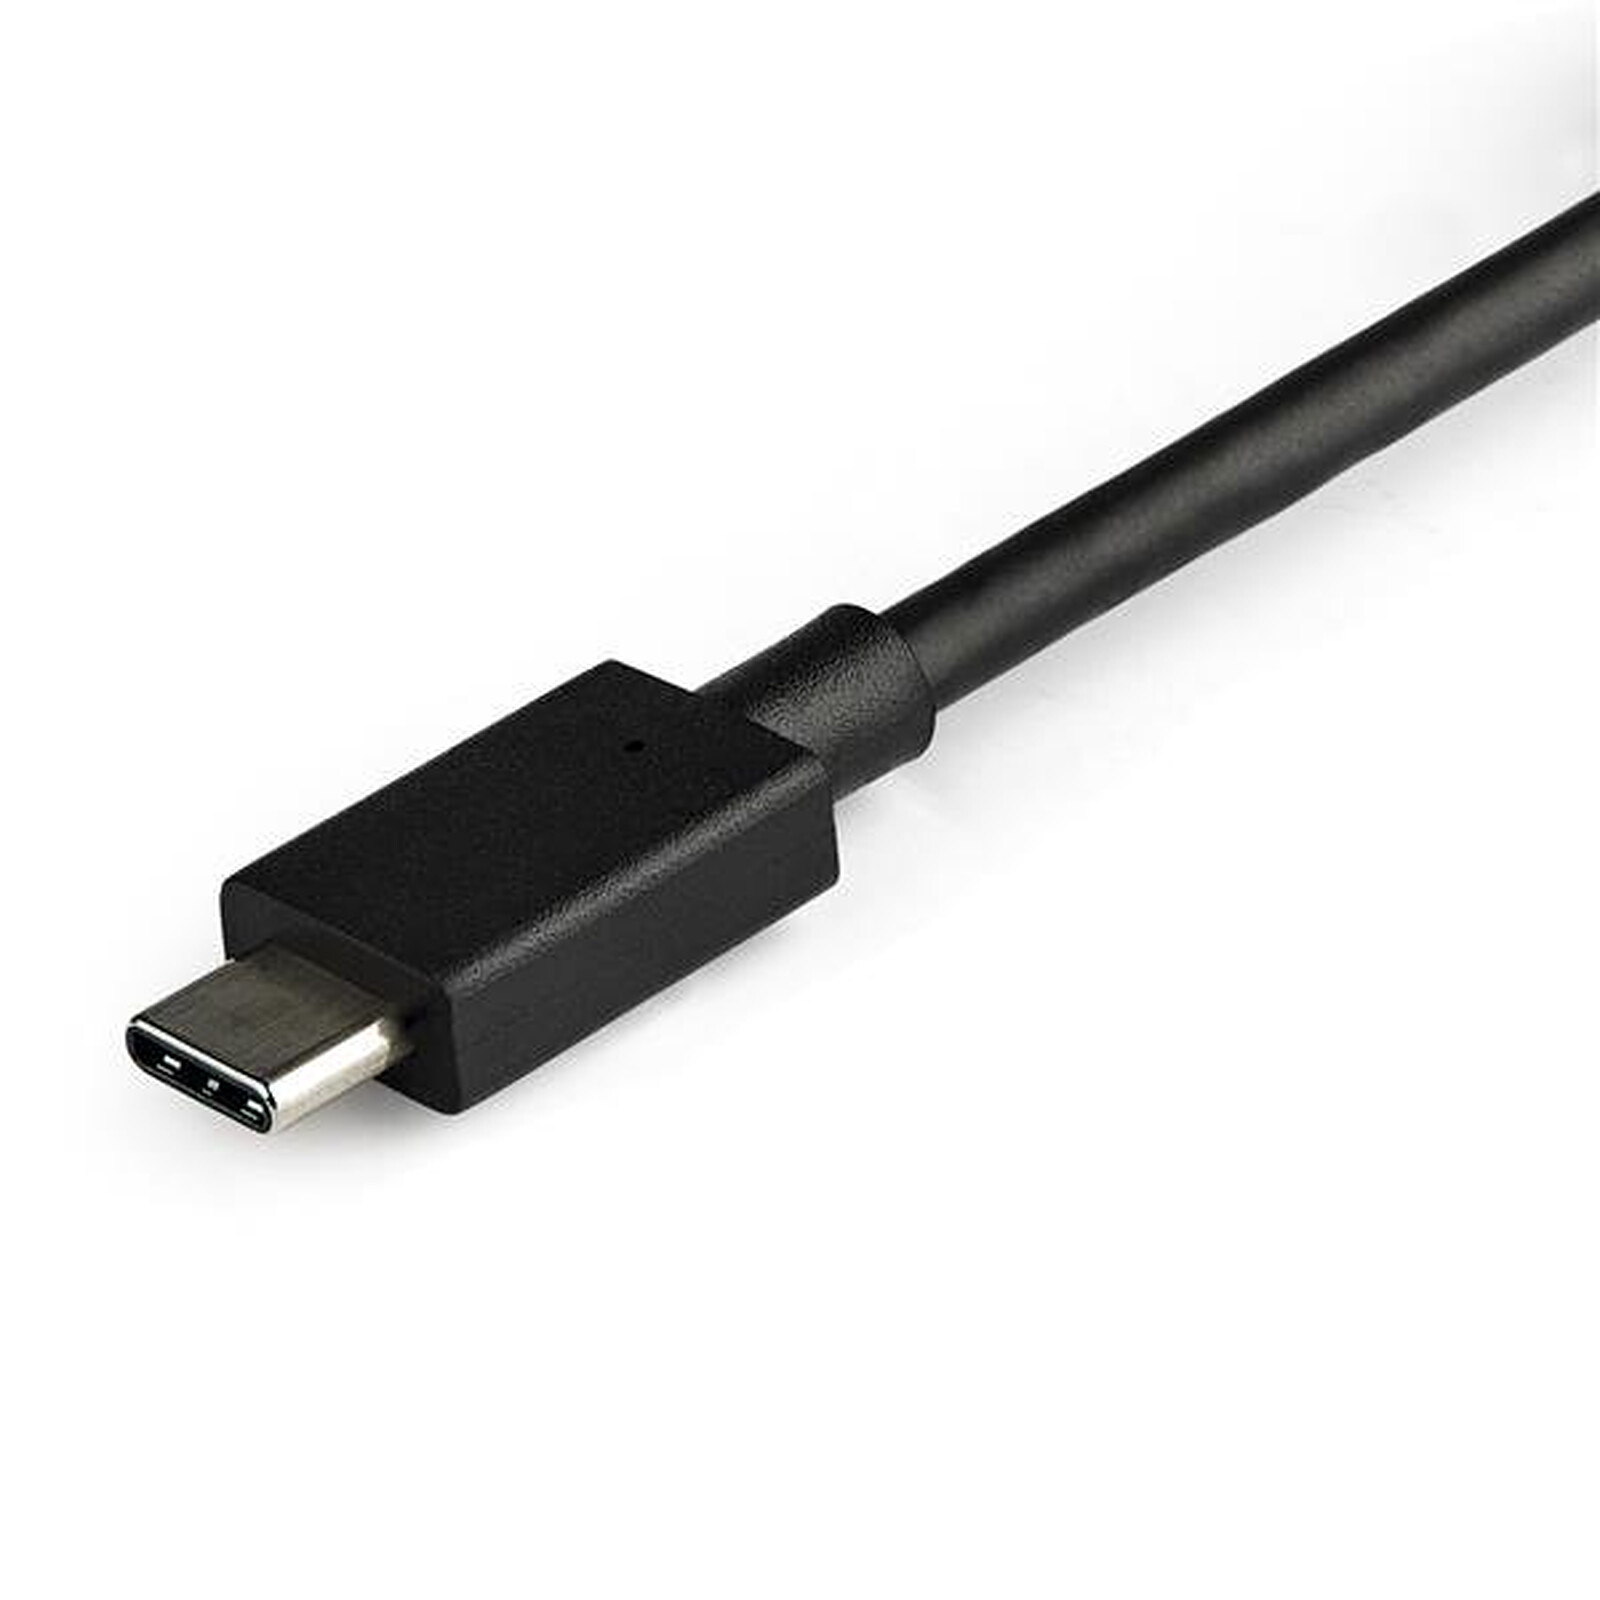 Adaptateur USB-C mâle à HDMI femelle - 4K HDR